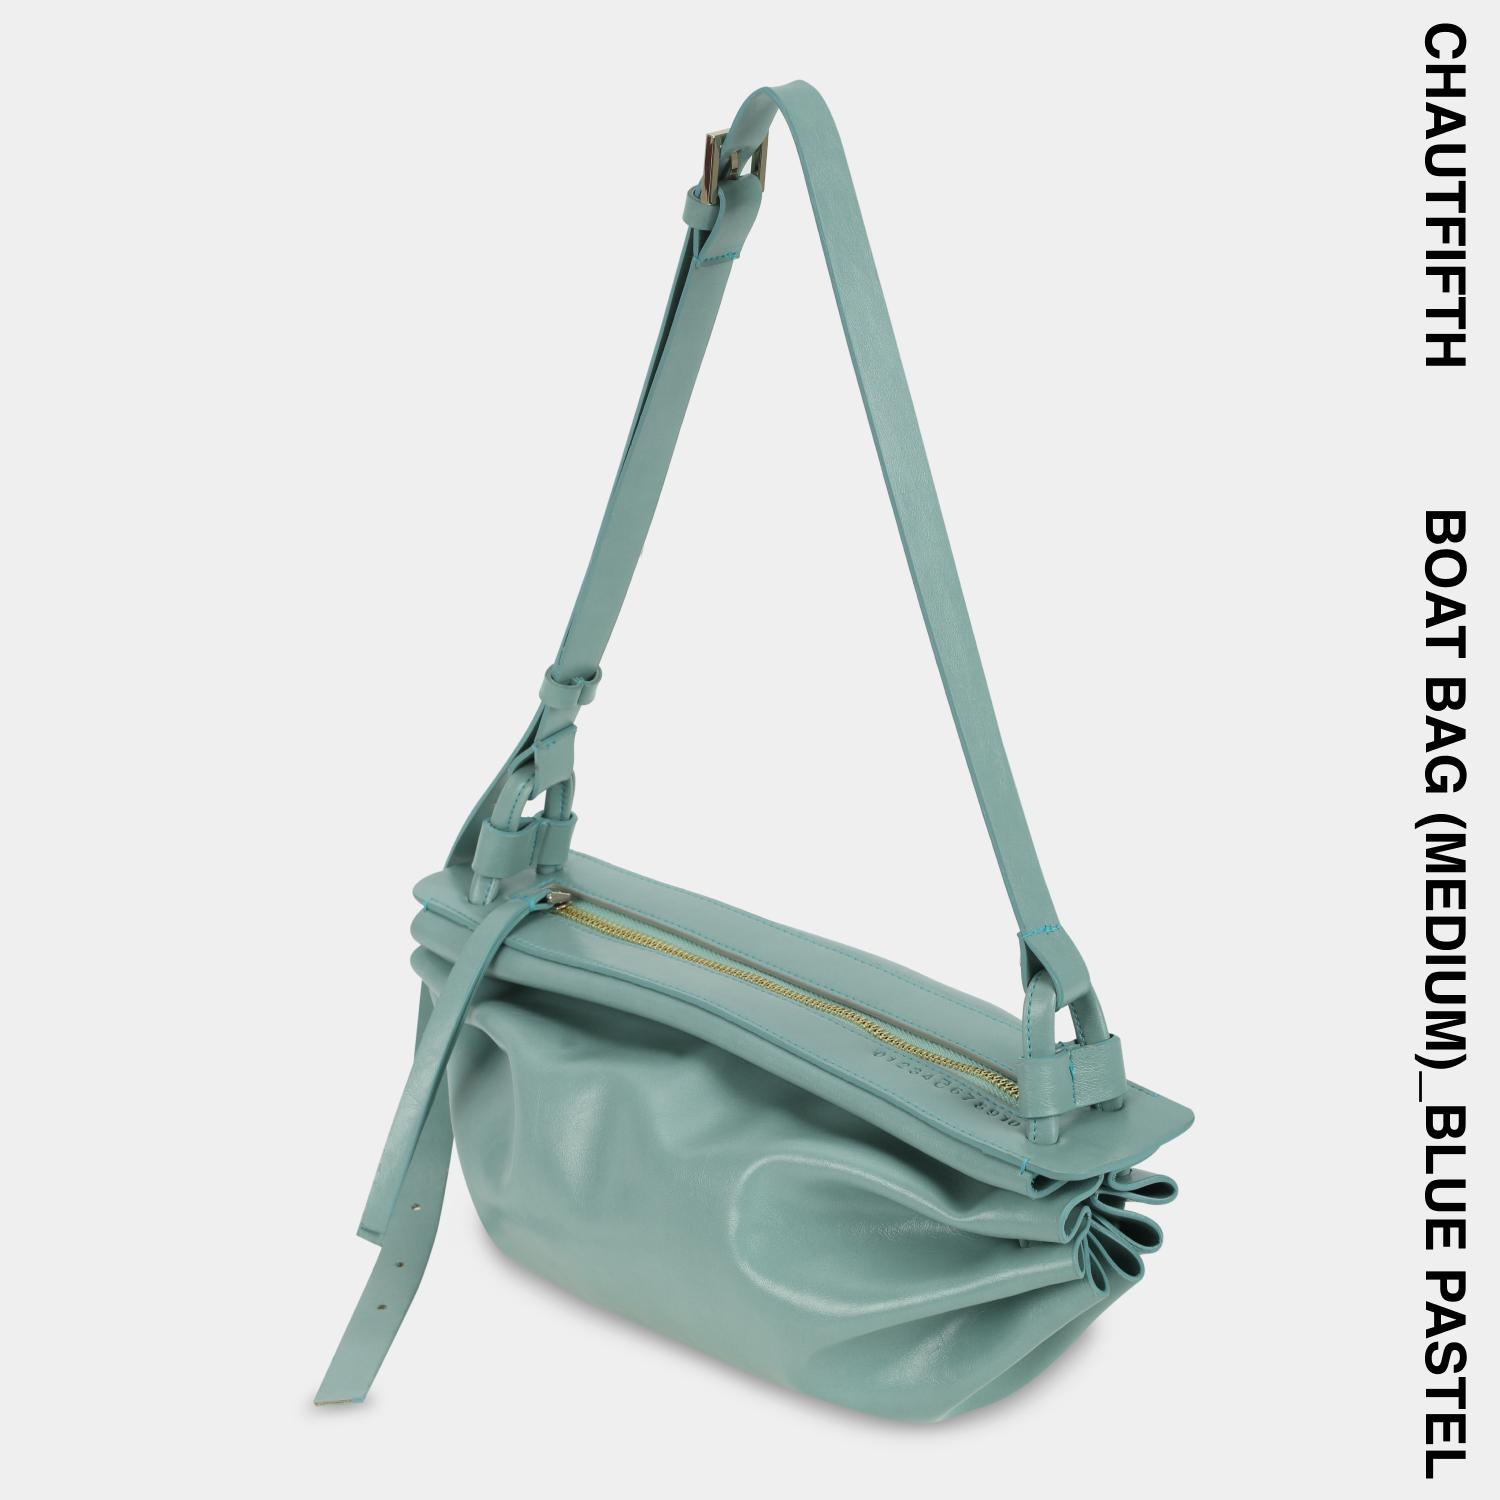 Túi xách BOAT BAG size lớn (M) màu Xanh ngọc pastel - CHAUTFIFTH